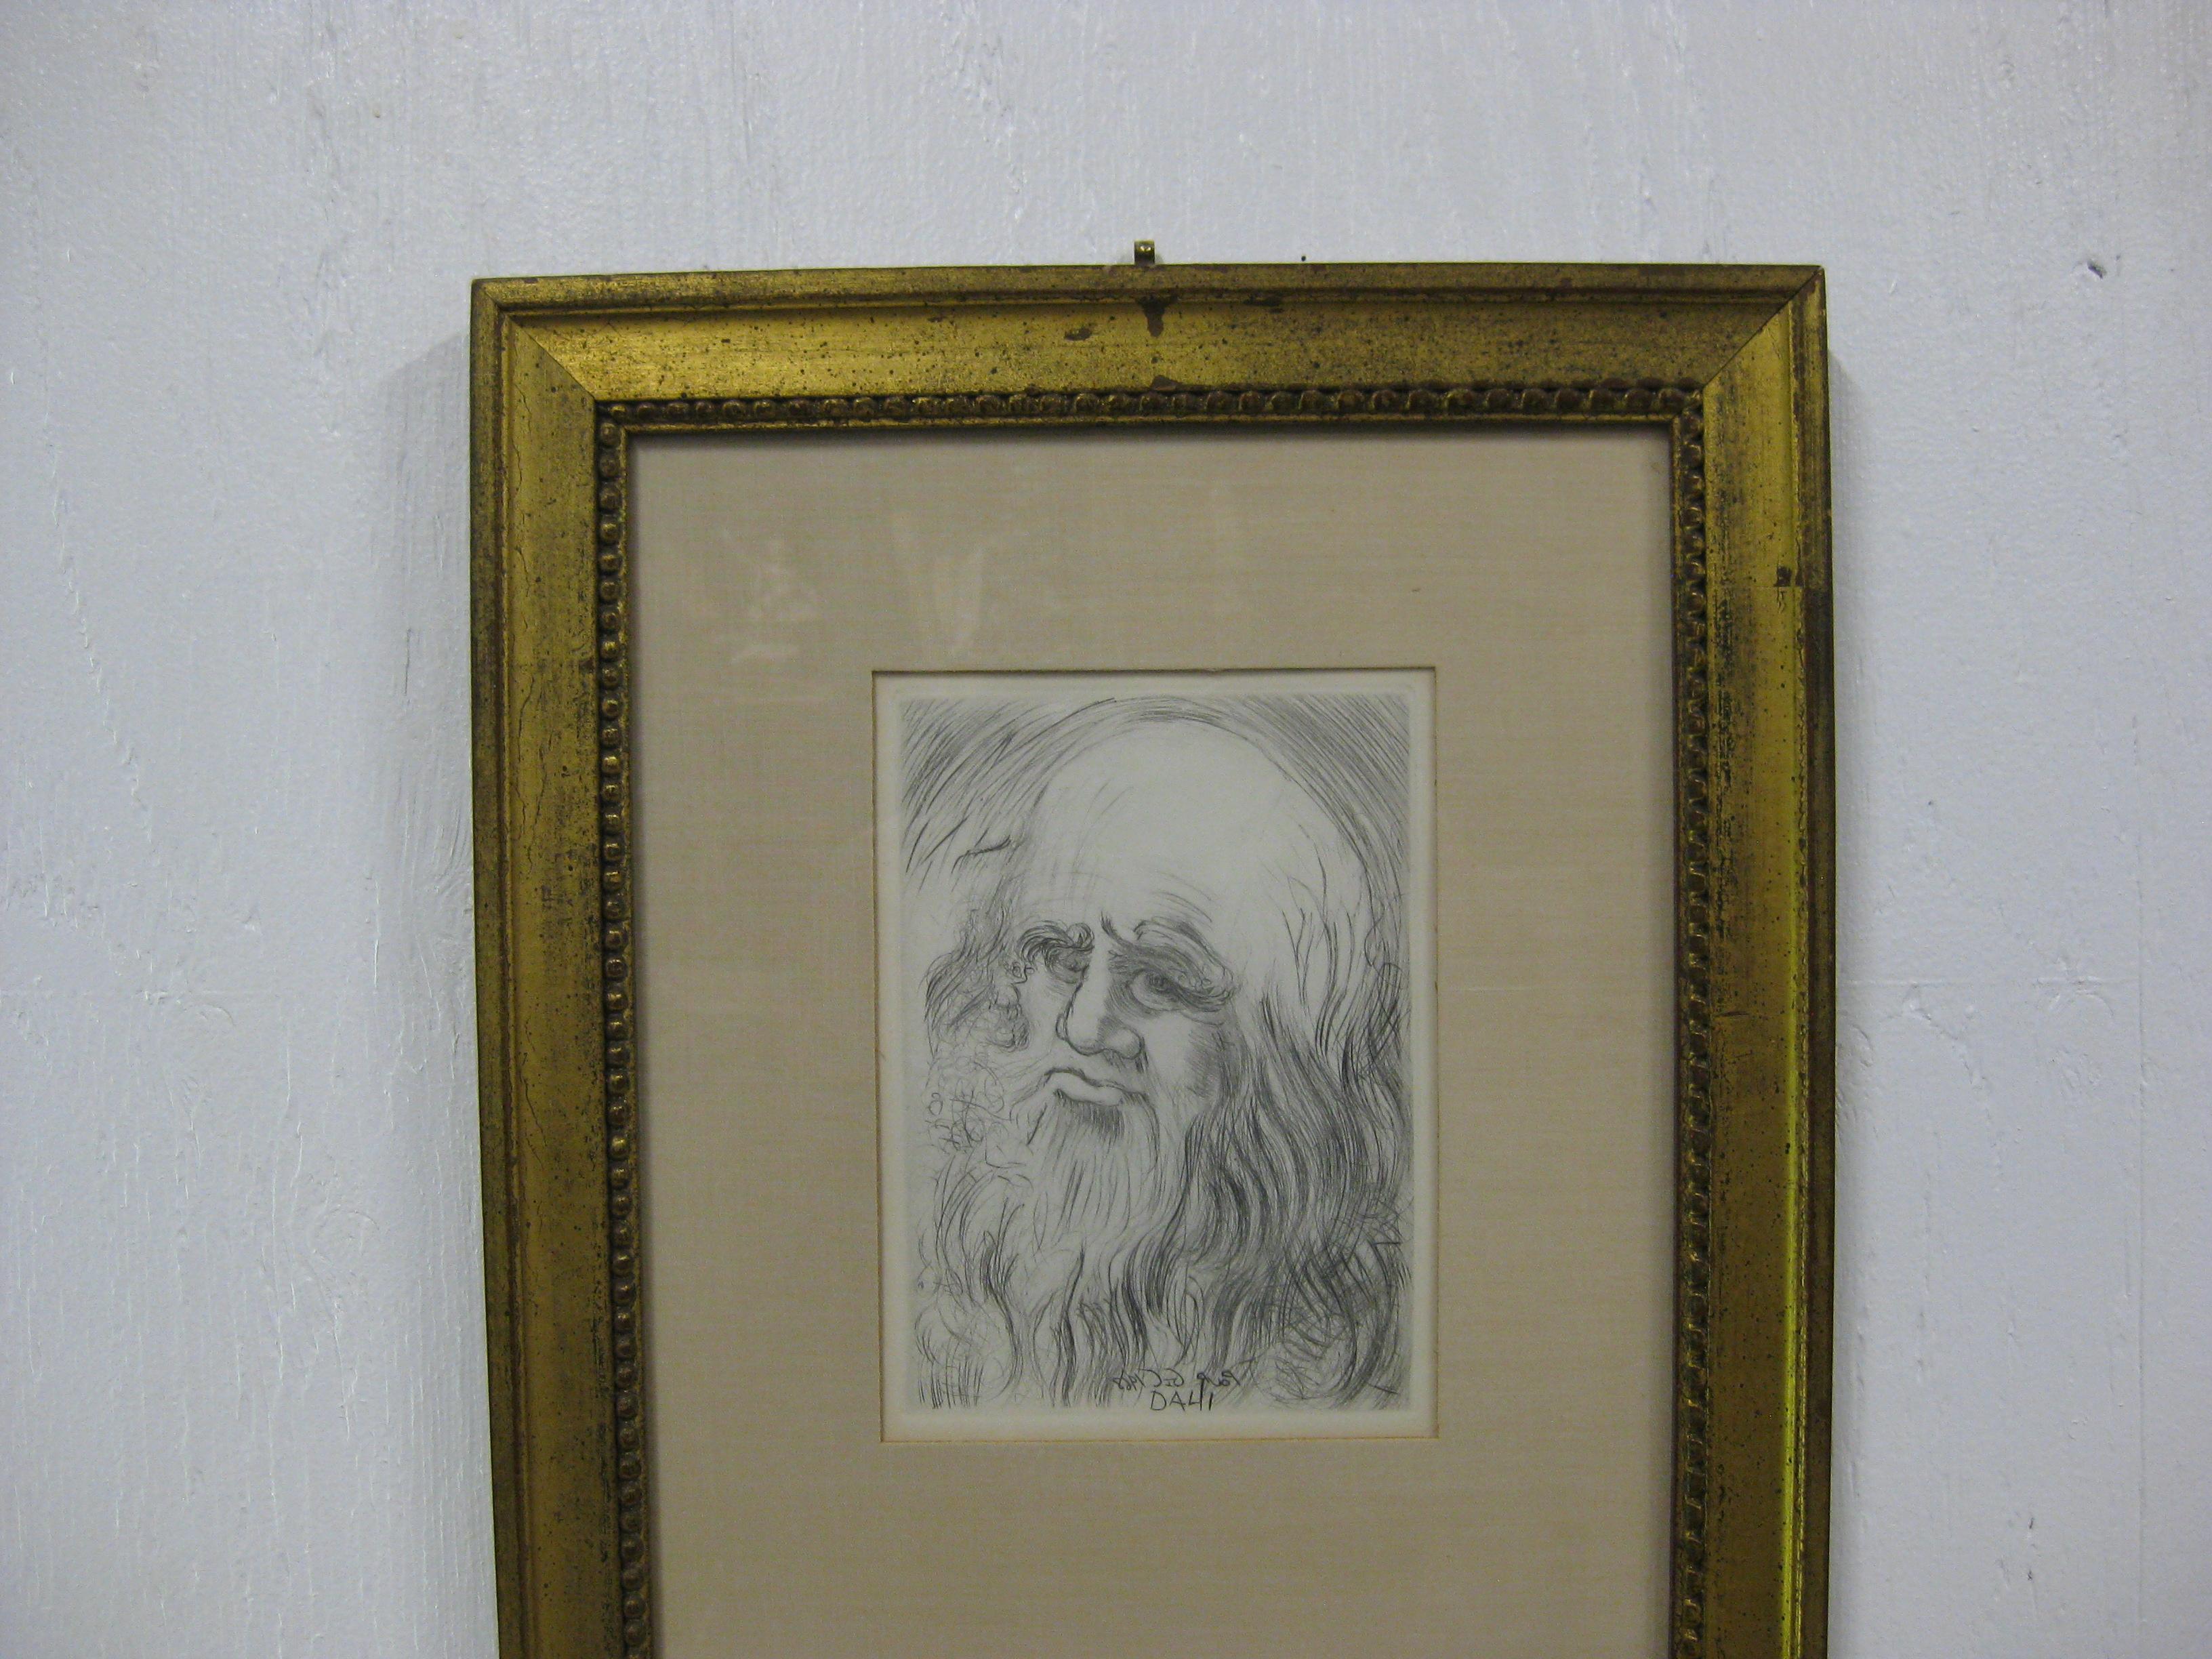 Portrait de Léonard de Vinci tiré de la série de gravures 